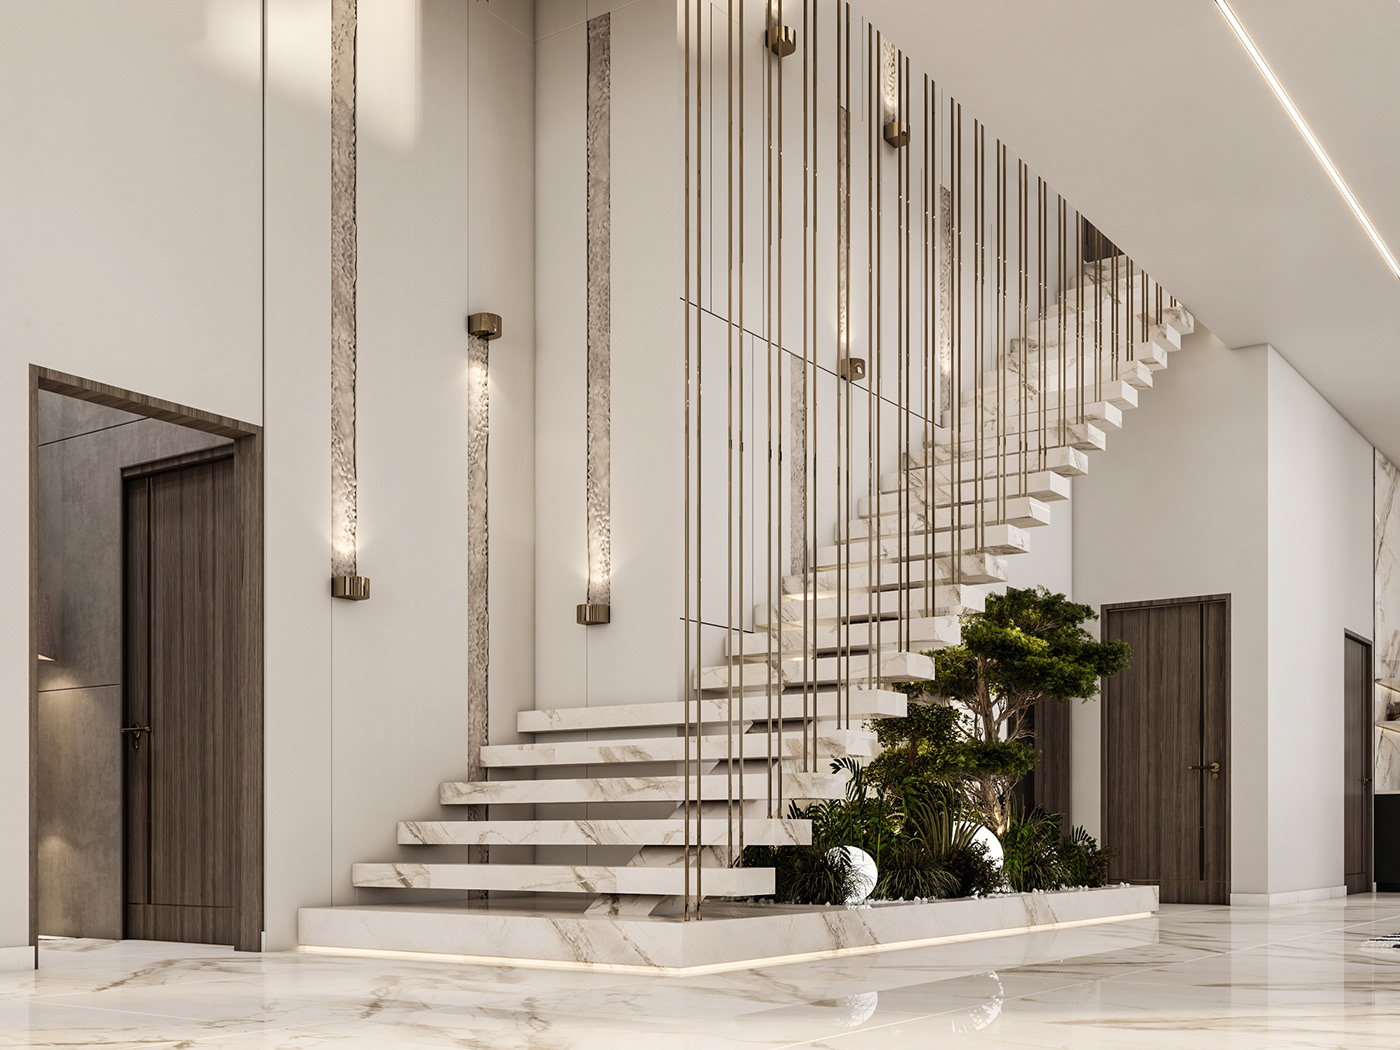 reception design dining room living interior design  3ds max vray Render 3dmodeling visualization modern